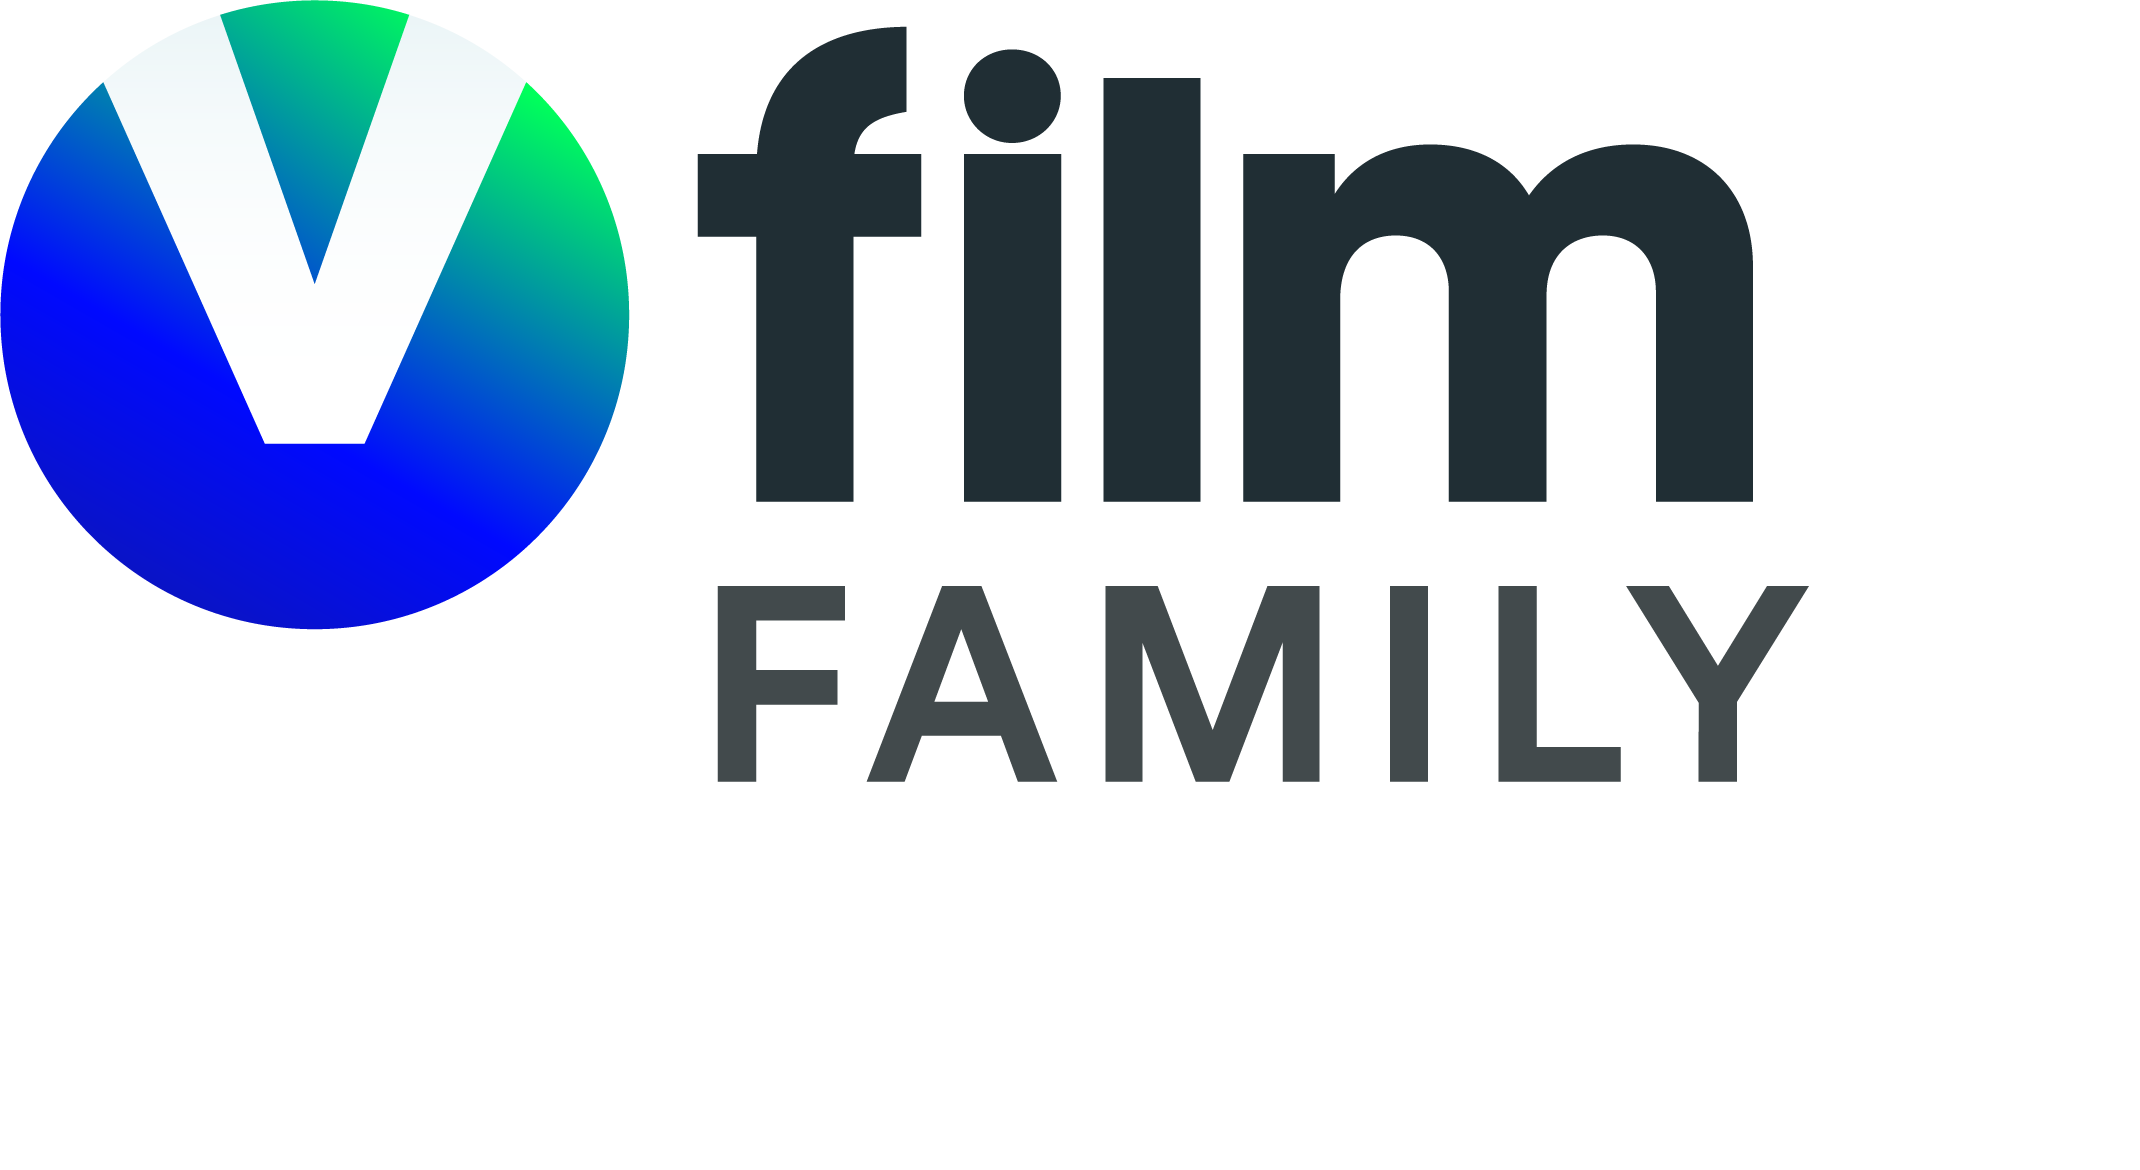 Viasat Film Family Denmark